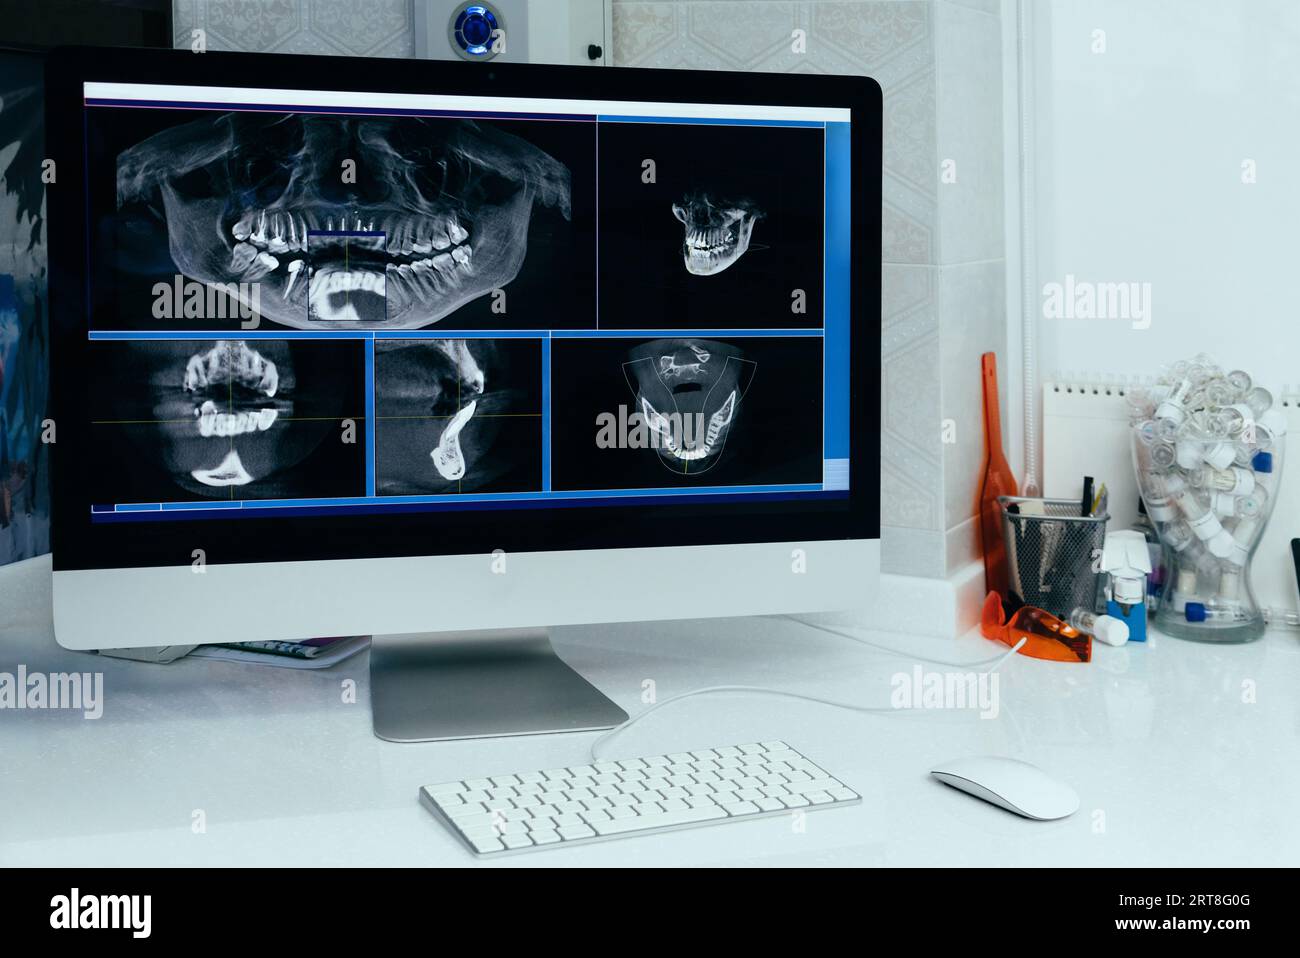 Immagine a raggi X di un computer nell'ufficio di un dentista. Foto Stock